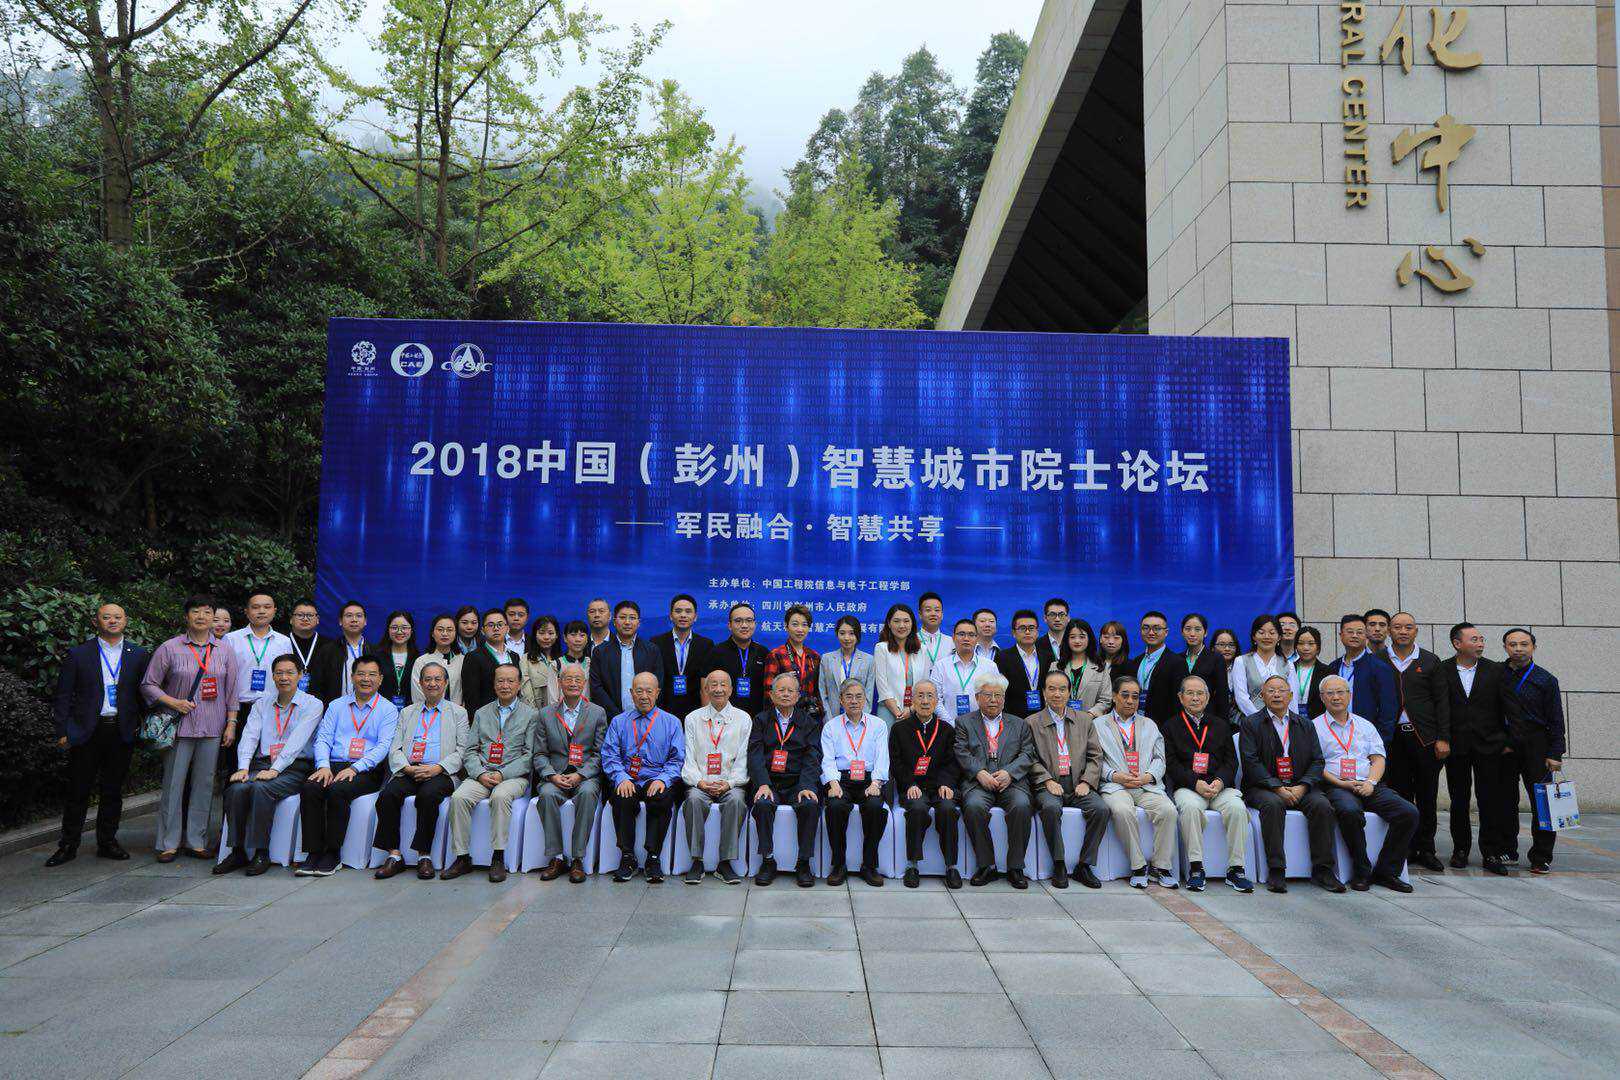 2018中国（彭州）智慧城市院士论坛在彭举行 16位院士“论剑”新时代智慧城市建设